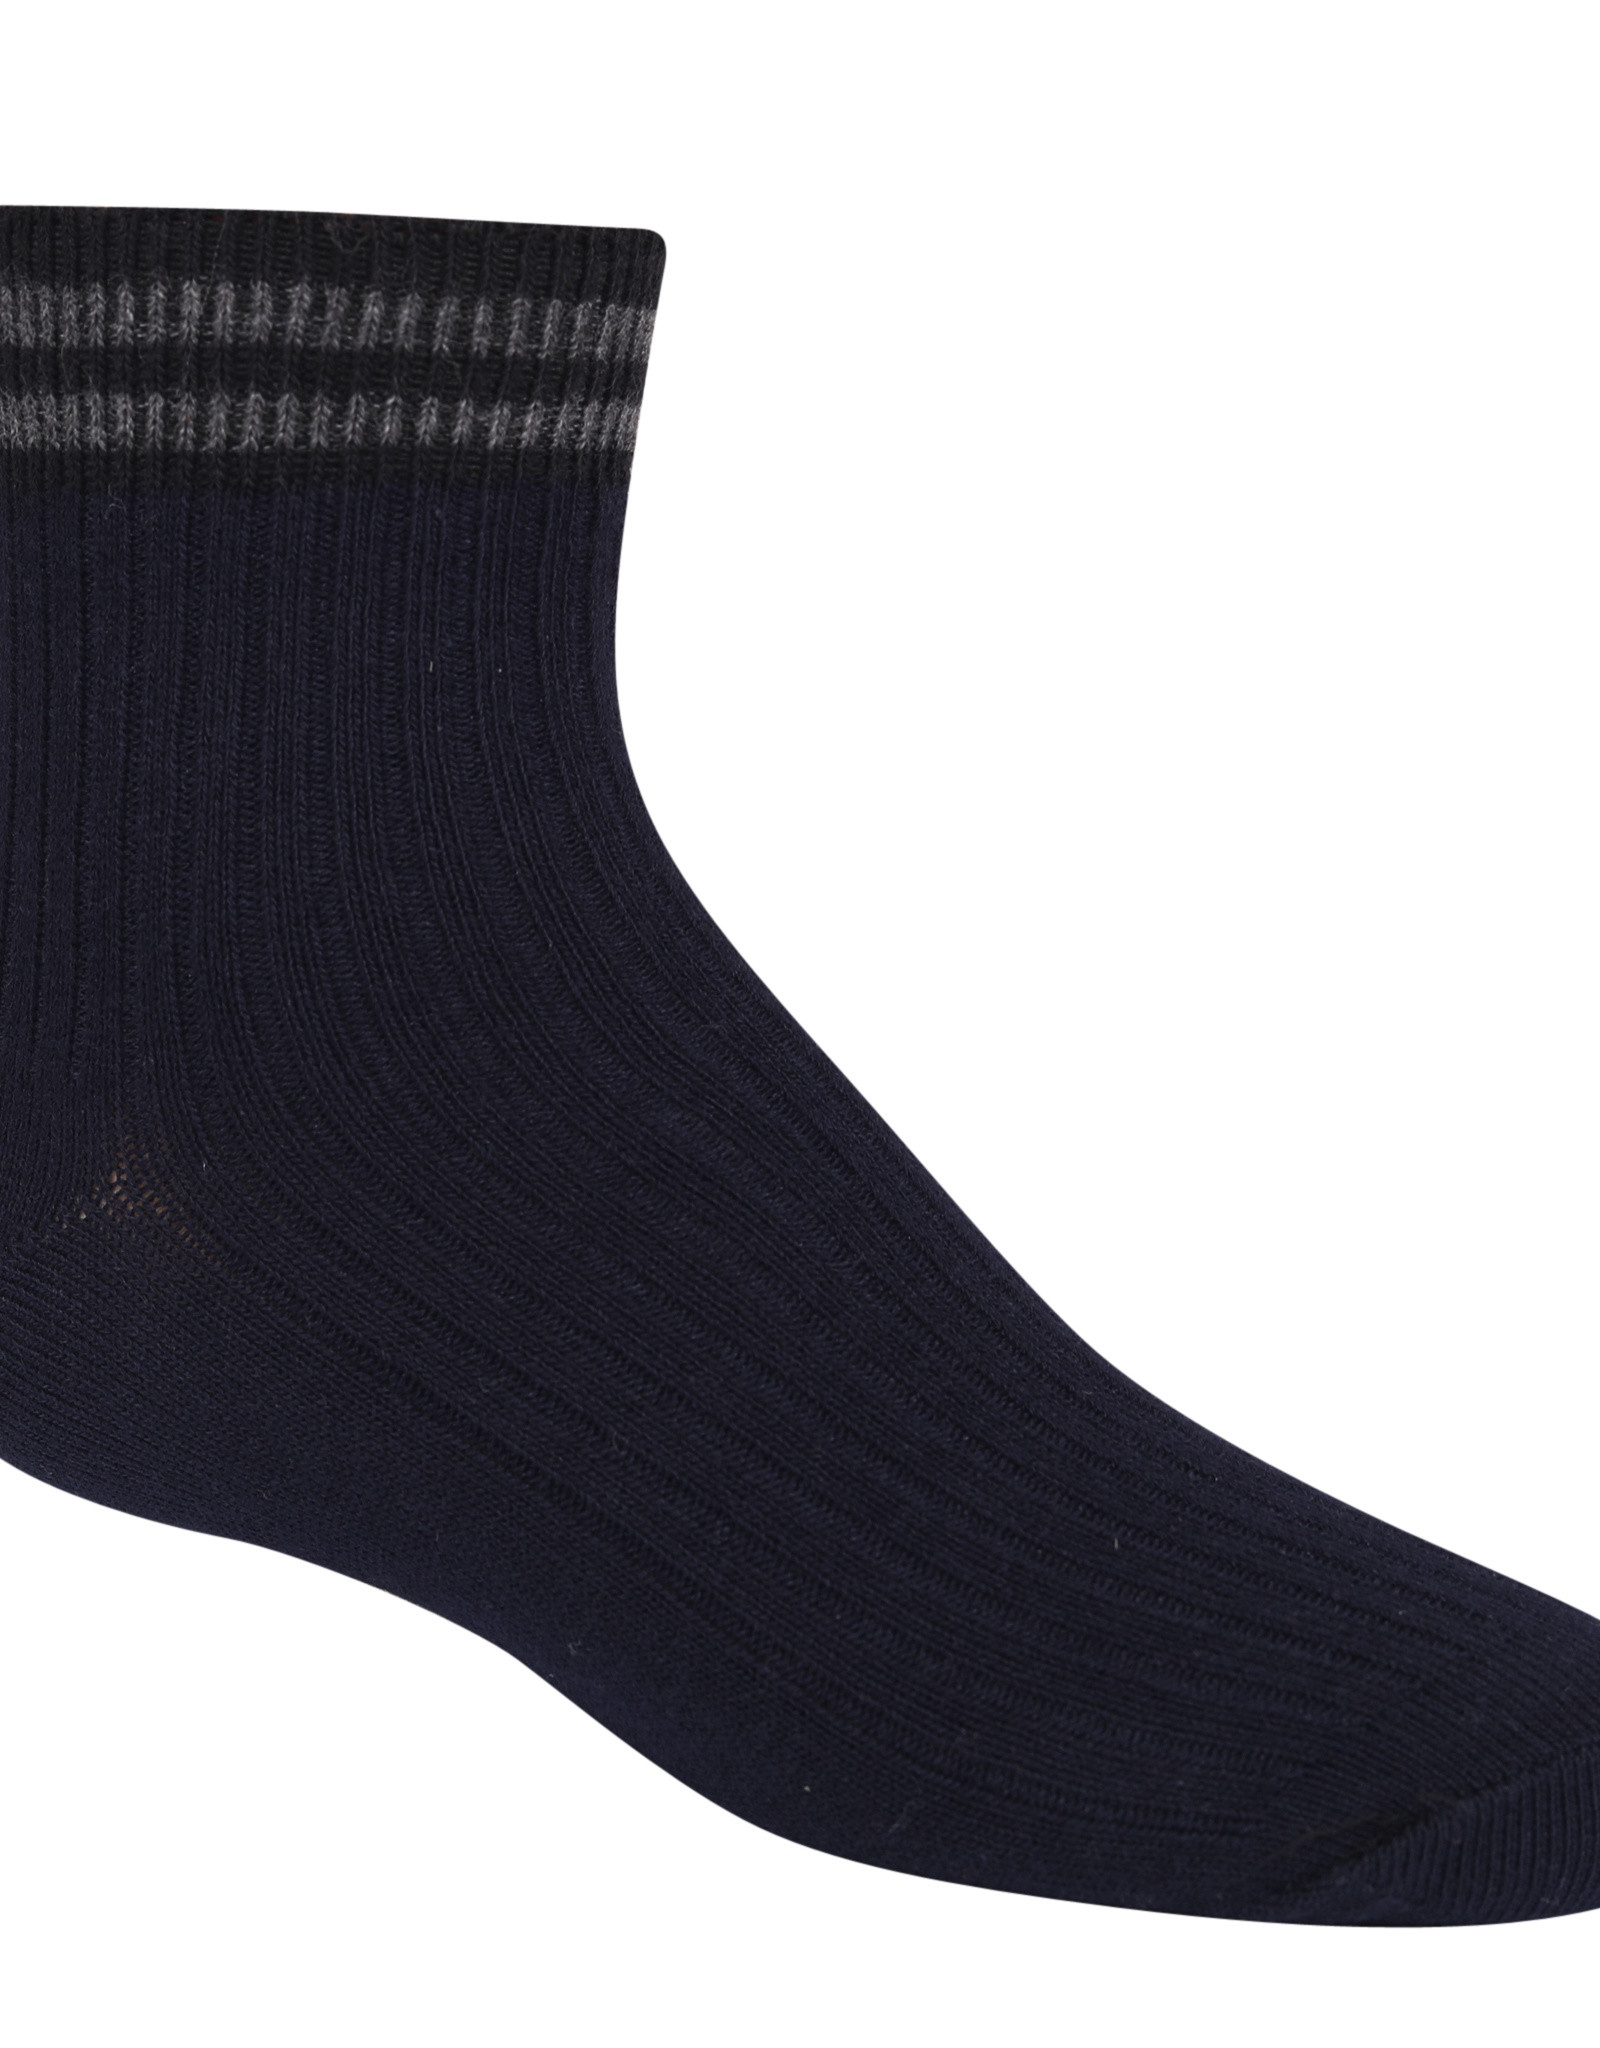 Zubii Zubii Varsity Striped Ankle Sock